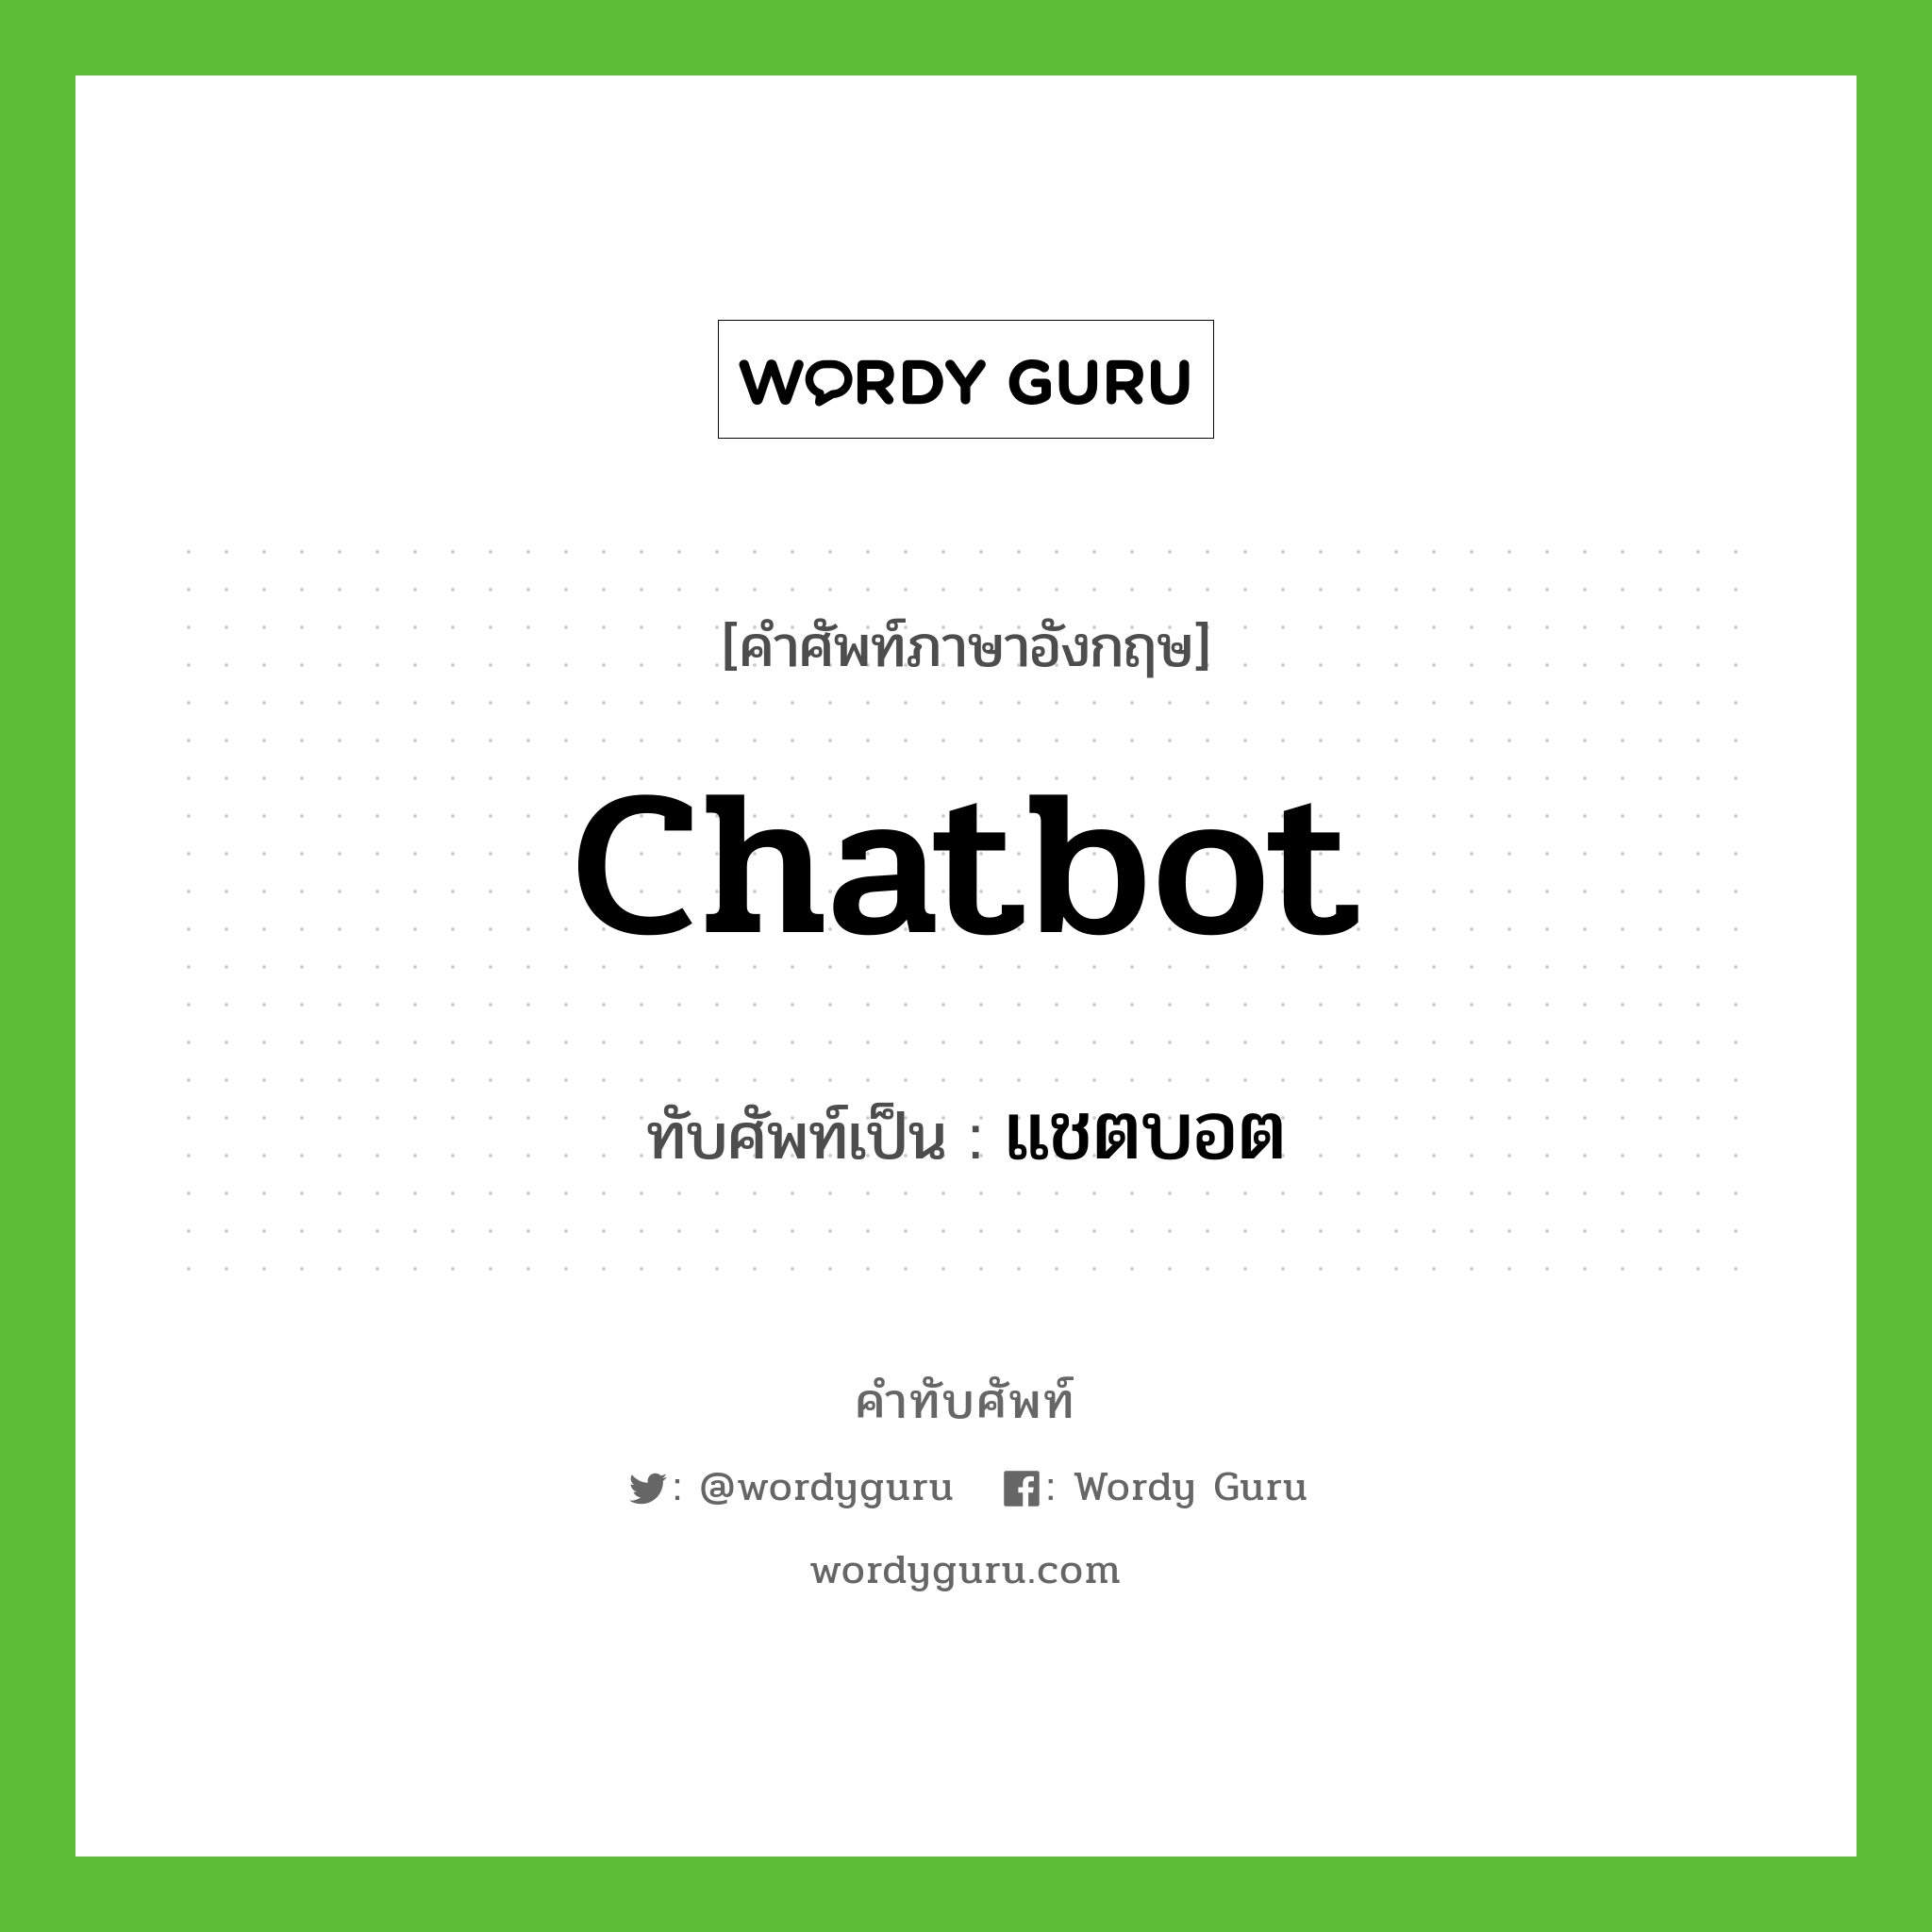 chatbot เขียนเป็นคำไทยว่าอะไร?, คำศัพท์ภาษาอังกฤษ chatbot ทับศัพท์เป็น แชตบอต